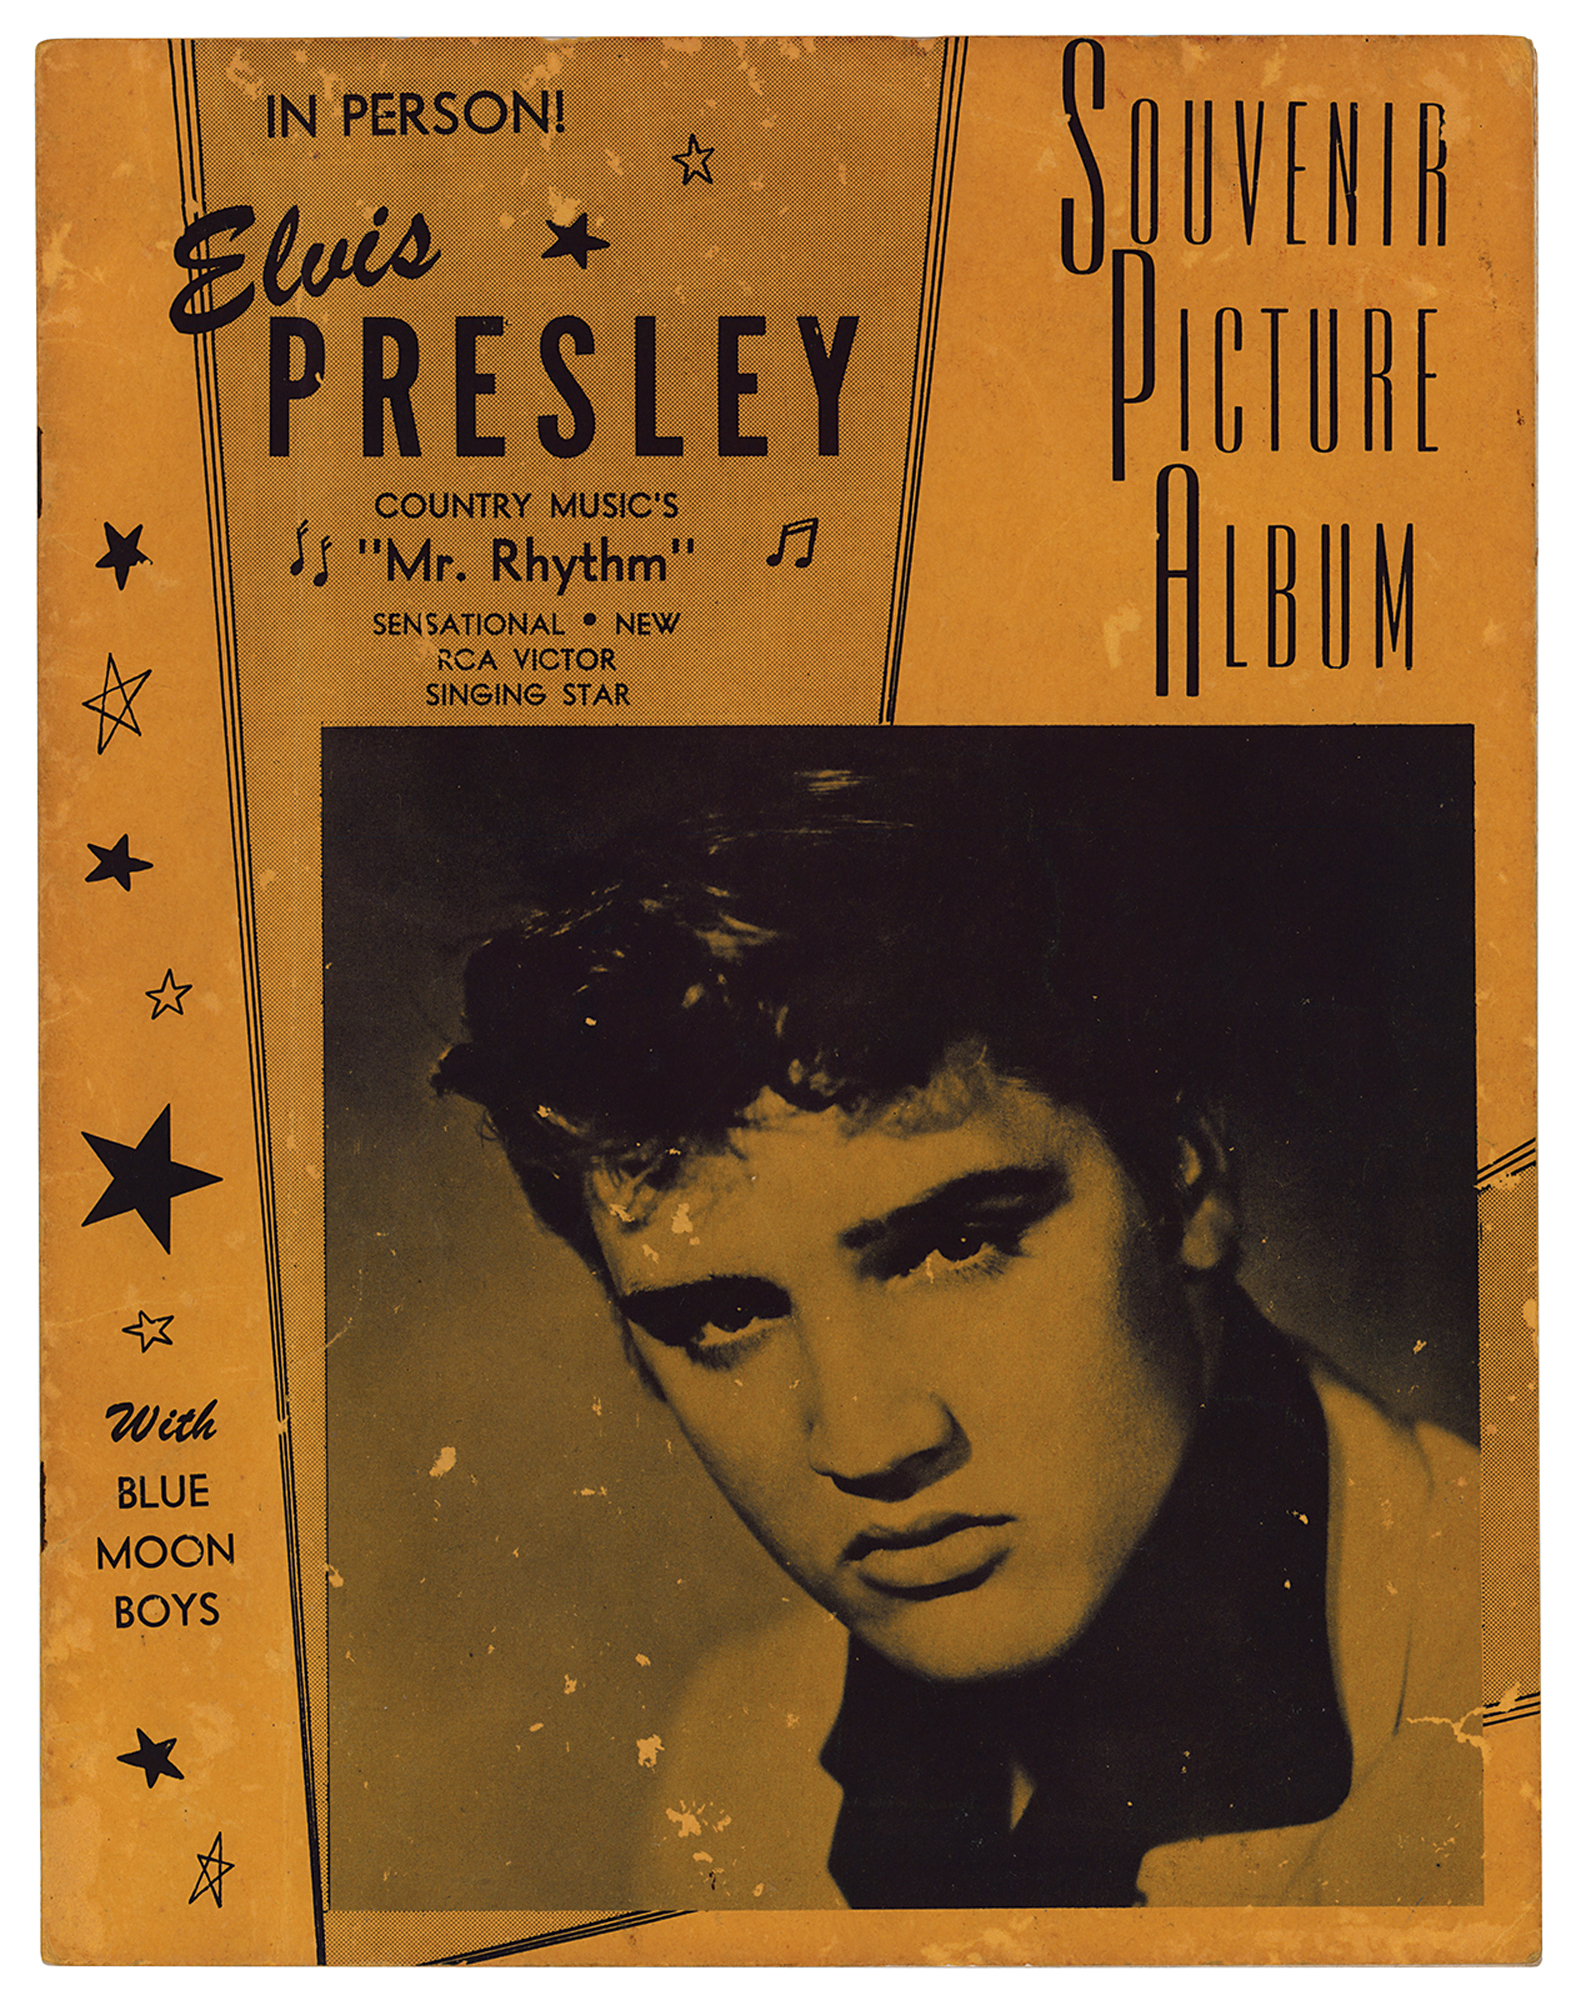 Lot #2183 Elvis Presley 1956 'Souvenir Picture Album' Concert Program 